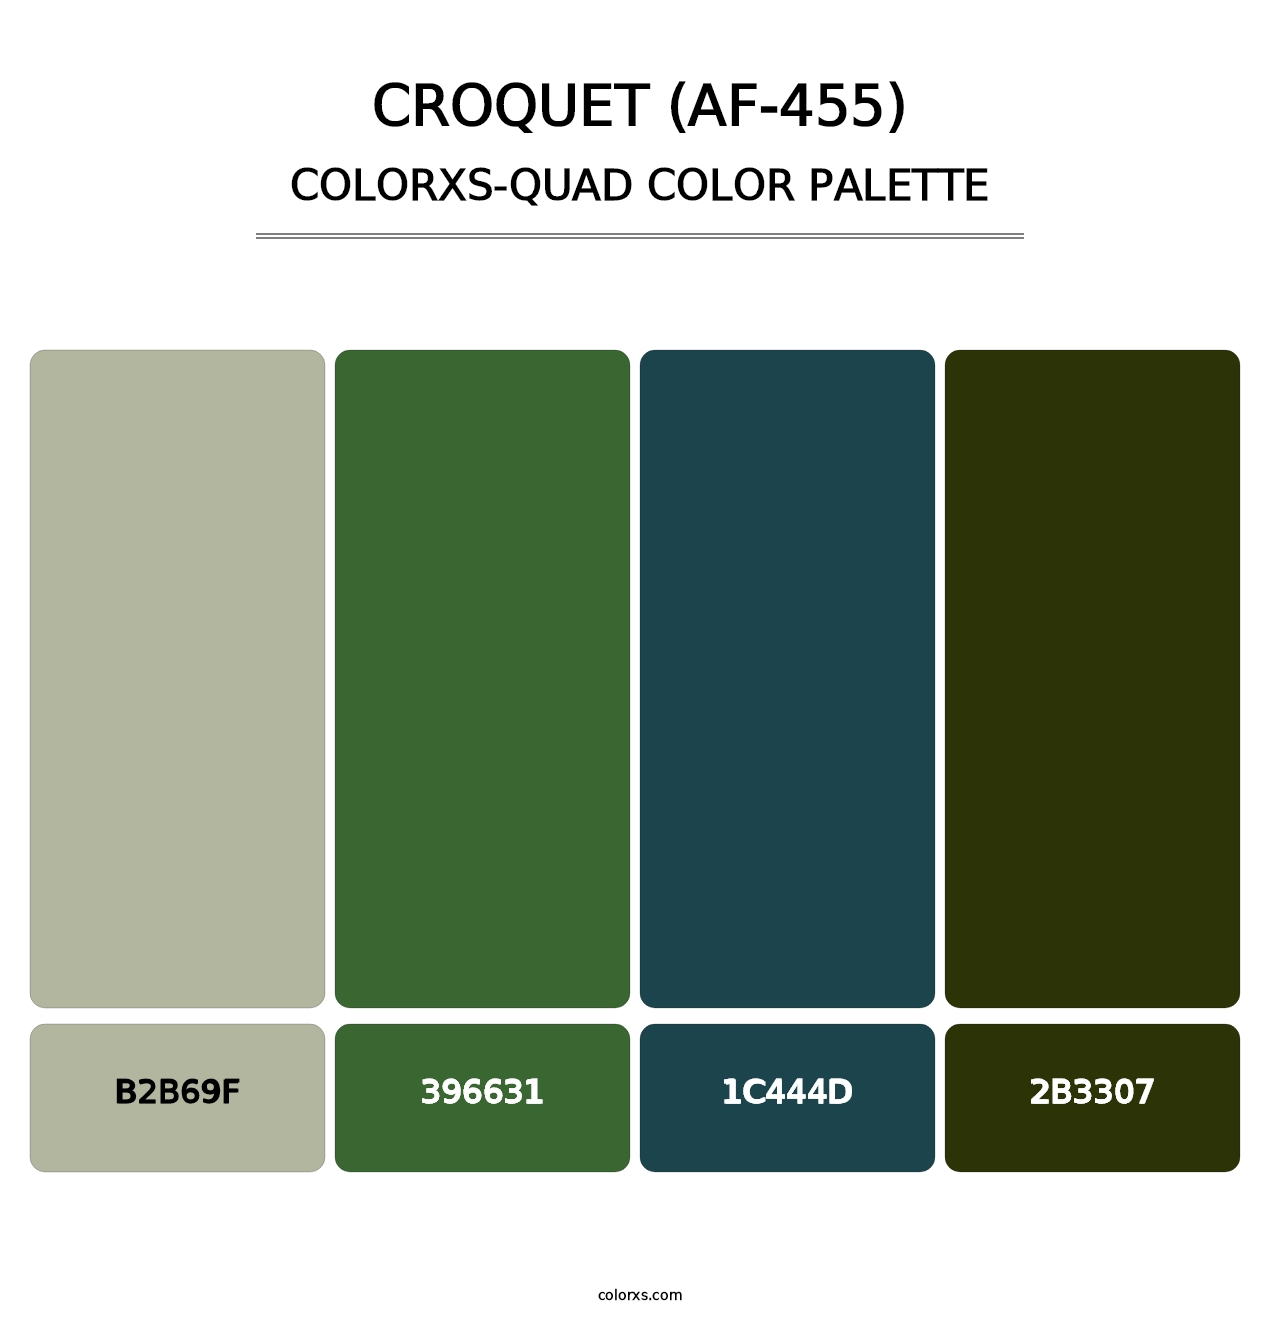 Croquet (AF-455) - Colorxs Quad Palette